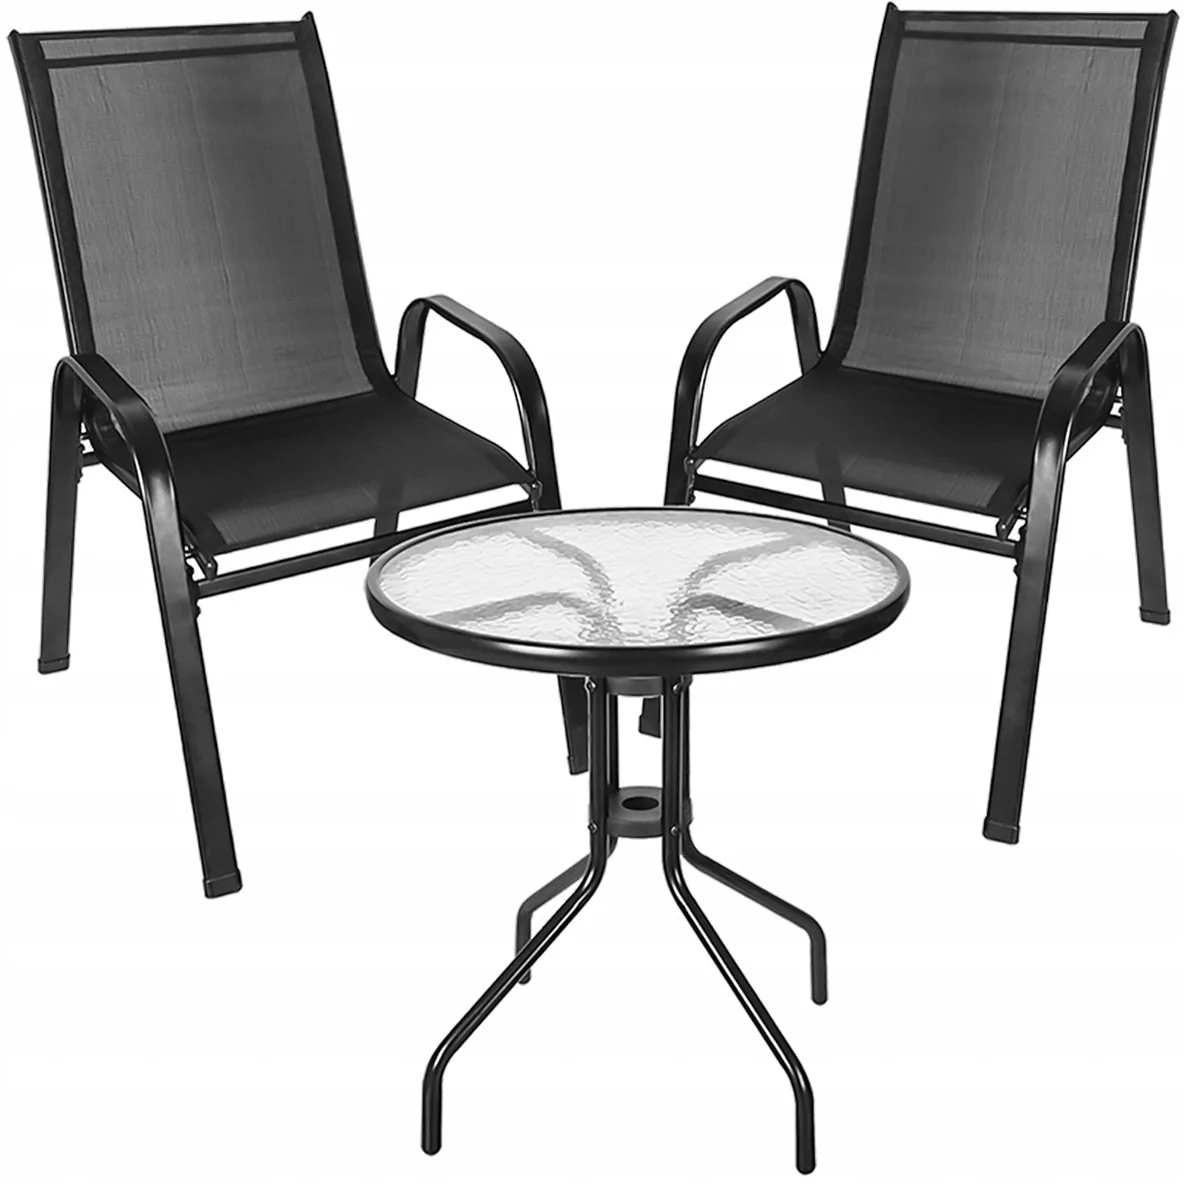 MEBLE OGRODOWE taras zestaw komplet stół krzesła FIESTA